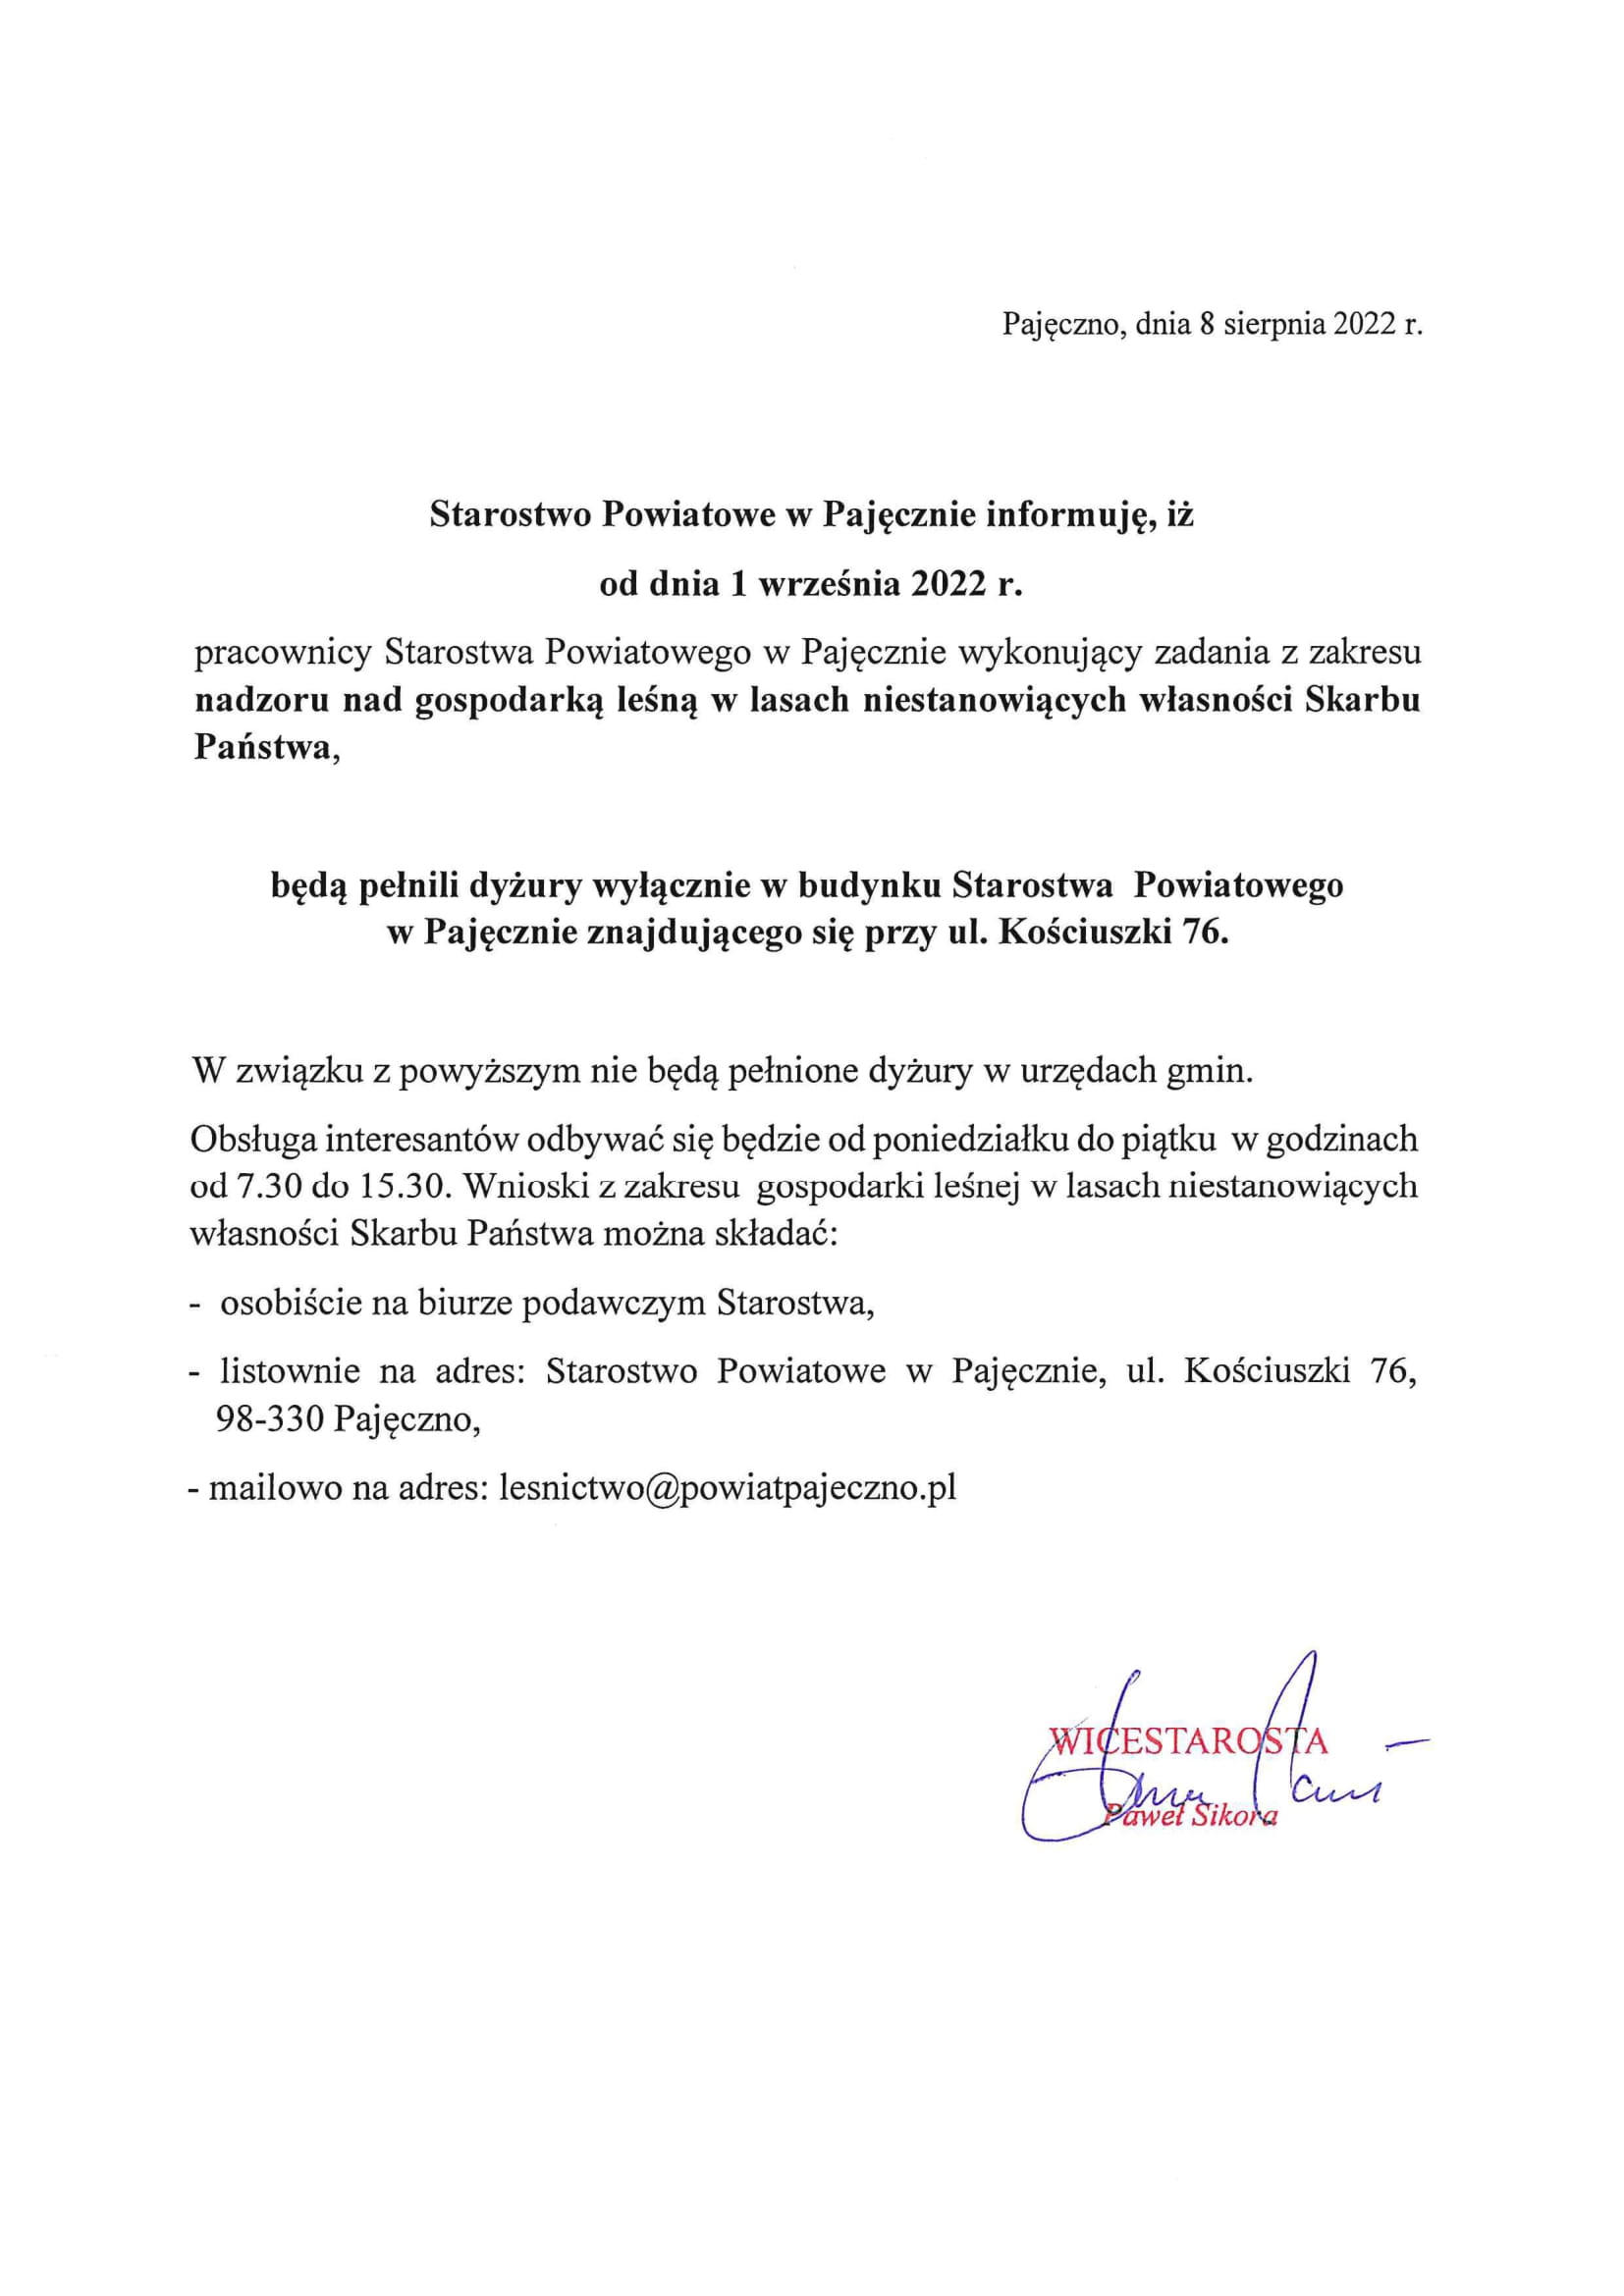 Informacja Starostwa Powiatowego w Pajęcznie dotycząca dyżurów leśniczego